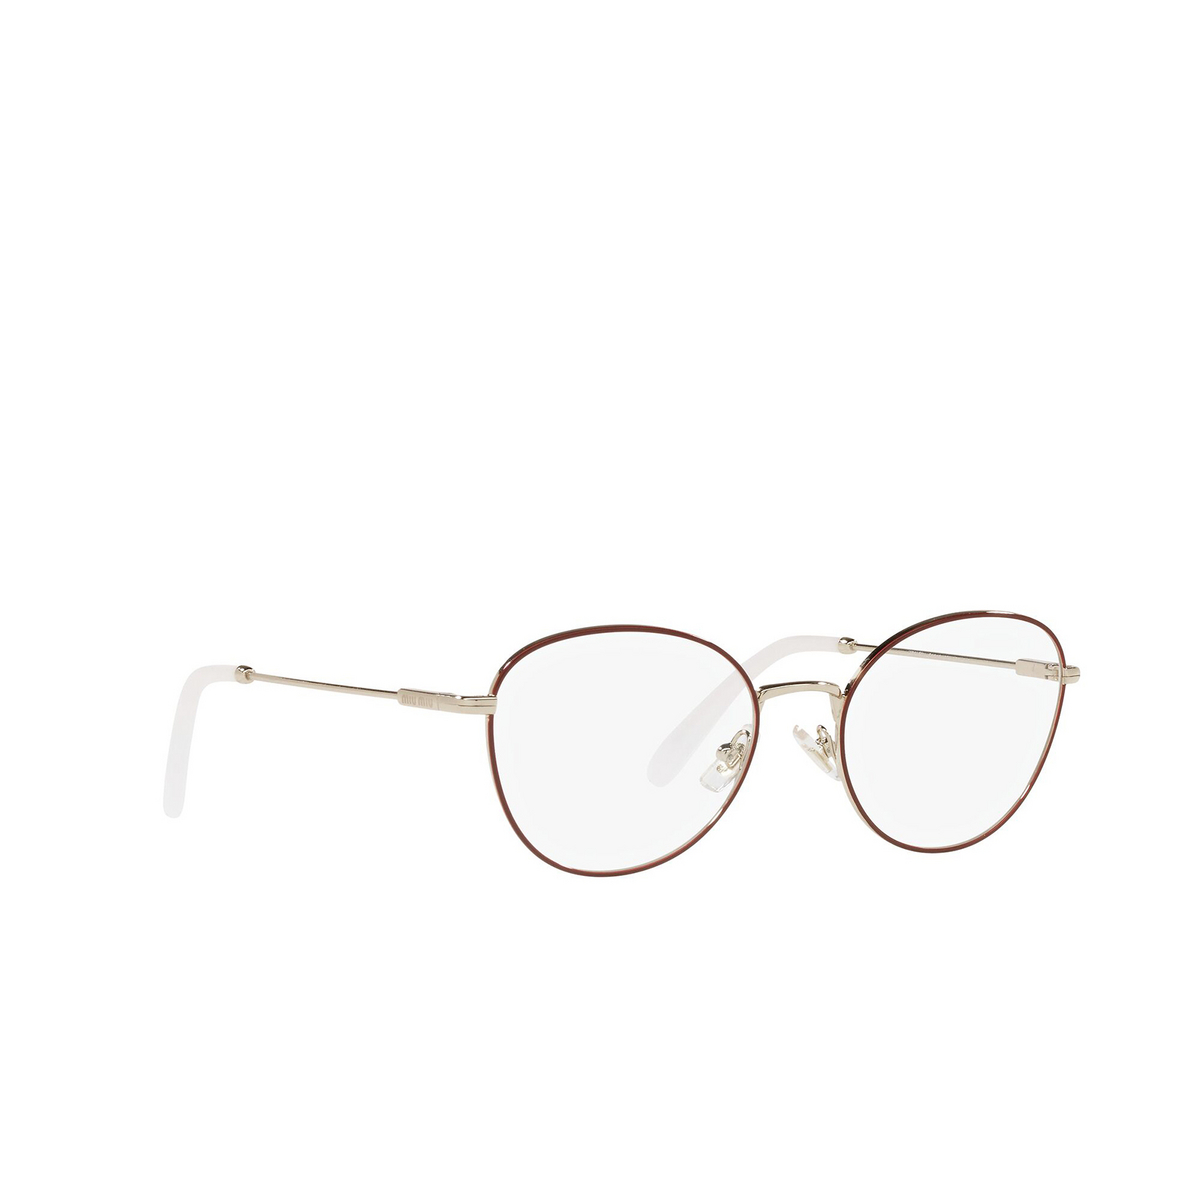 Miu Miu® Cat-eye Eyeglasses: MU 50UV color Bordeaux 09X1O1 - three-quarters view.